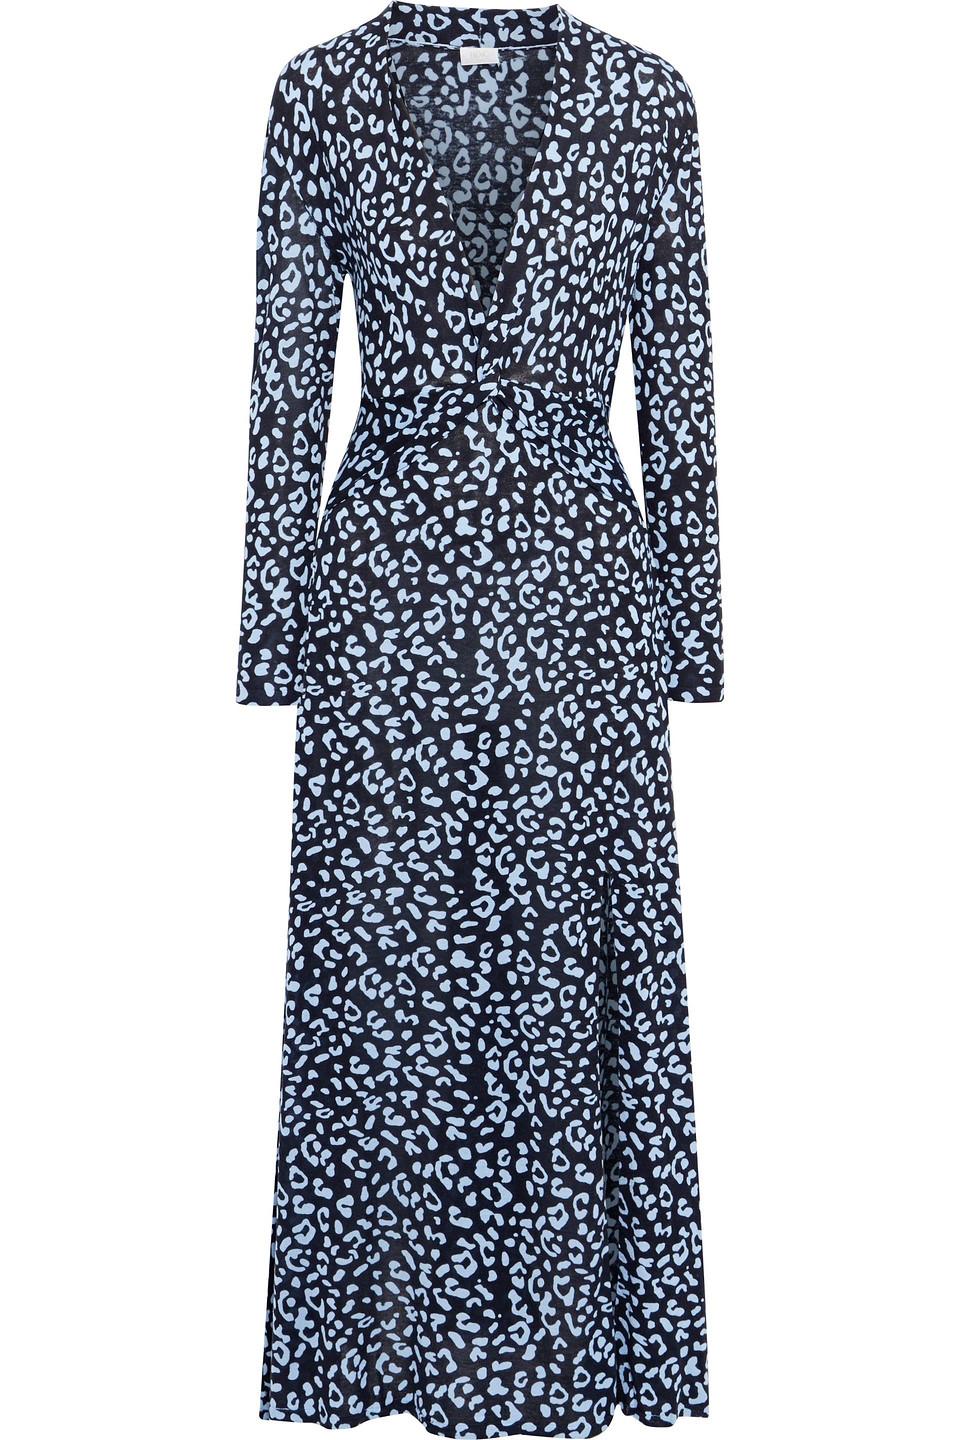 NEW Rixo London Adriana Animal-Print Silk Maxi Dress Sz XS,S M,L,XL 